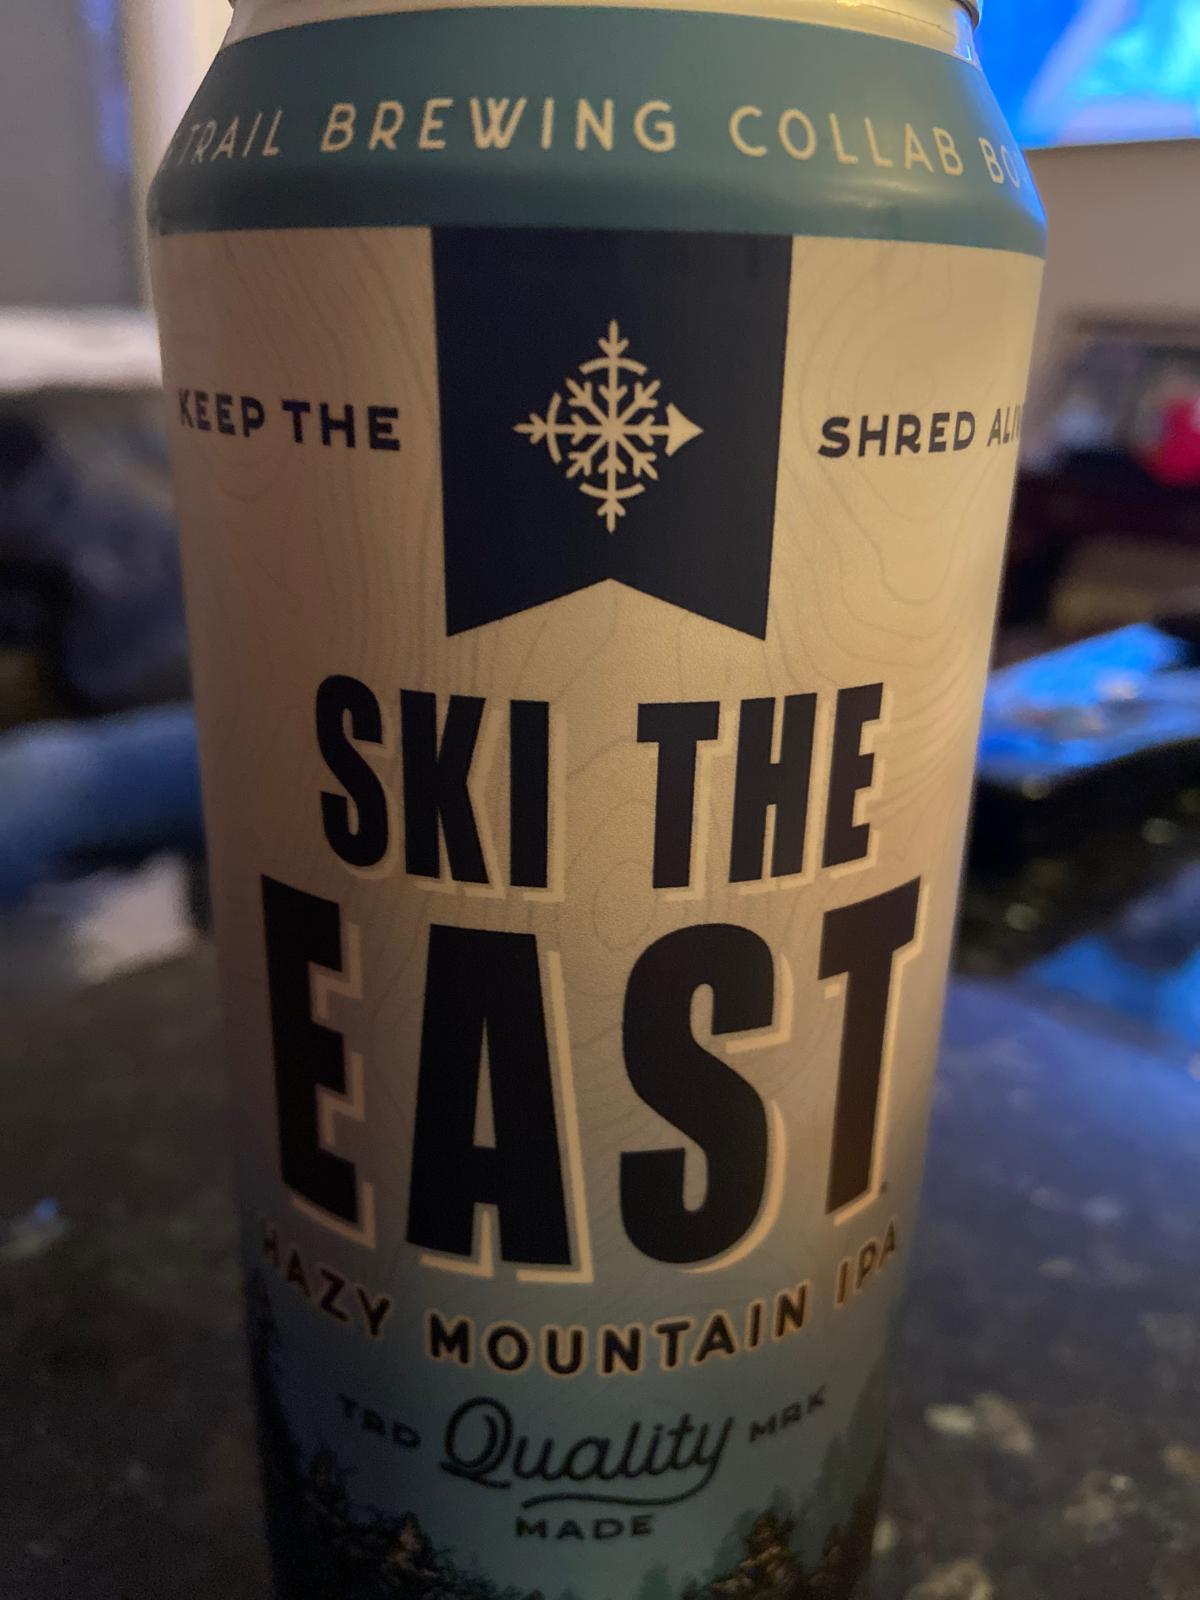 Ski The East